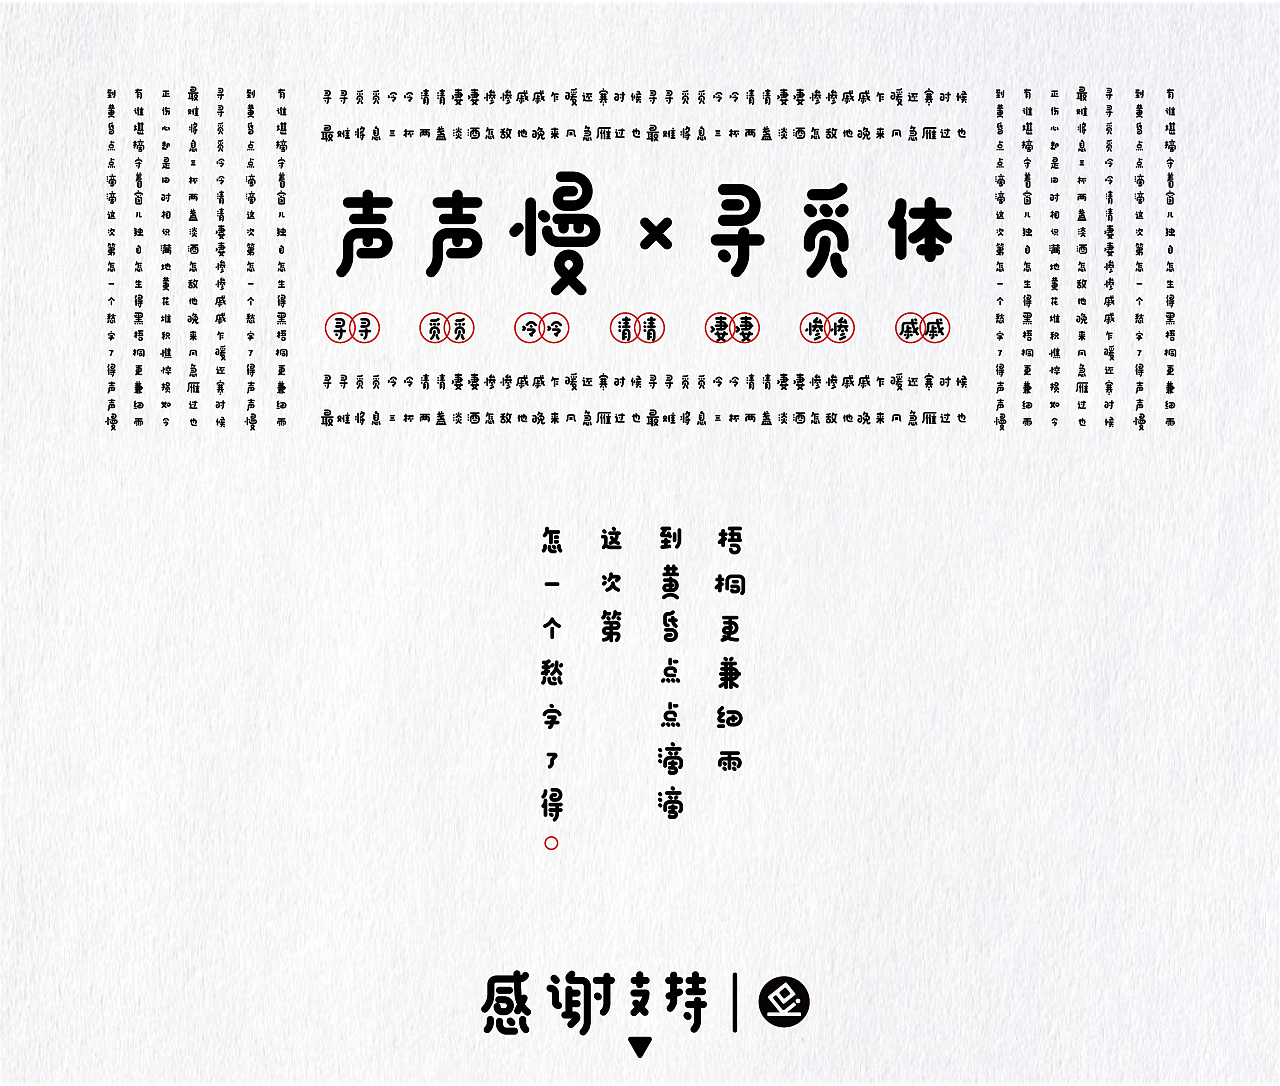 31P Inspired Chinese Font Design 声声慢-寻觅体